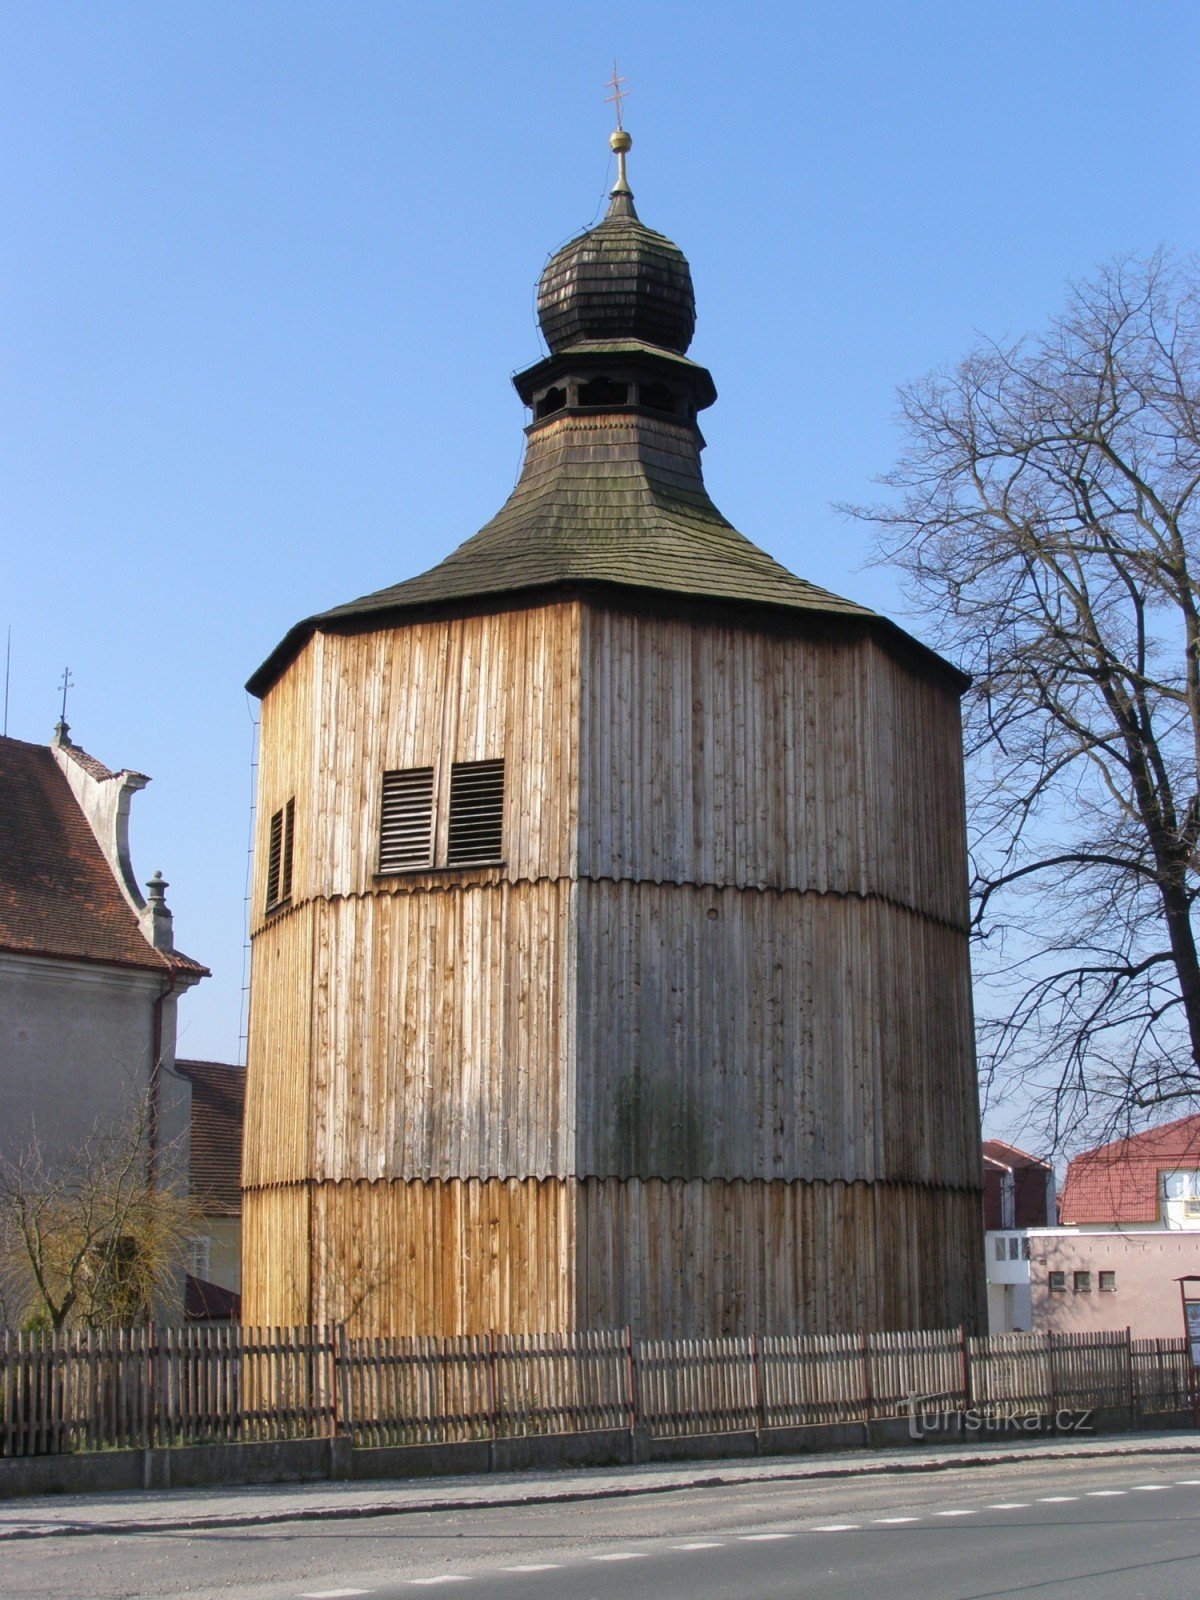 Сеземице - деревянная колокольня